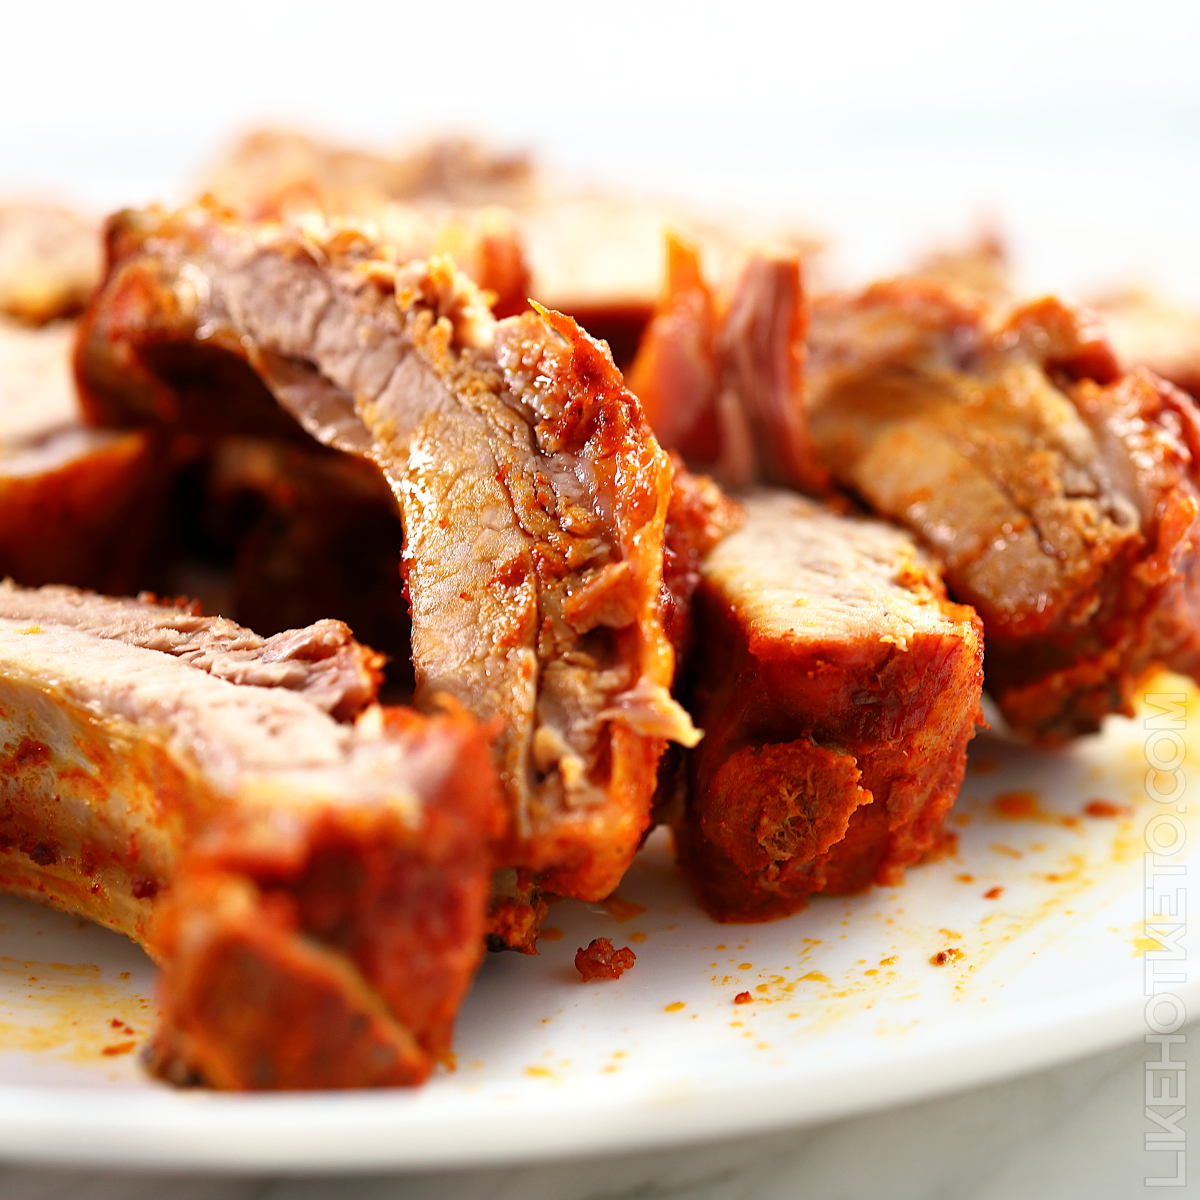 A plate of tender smoky chipotle pork ribs.